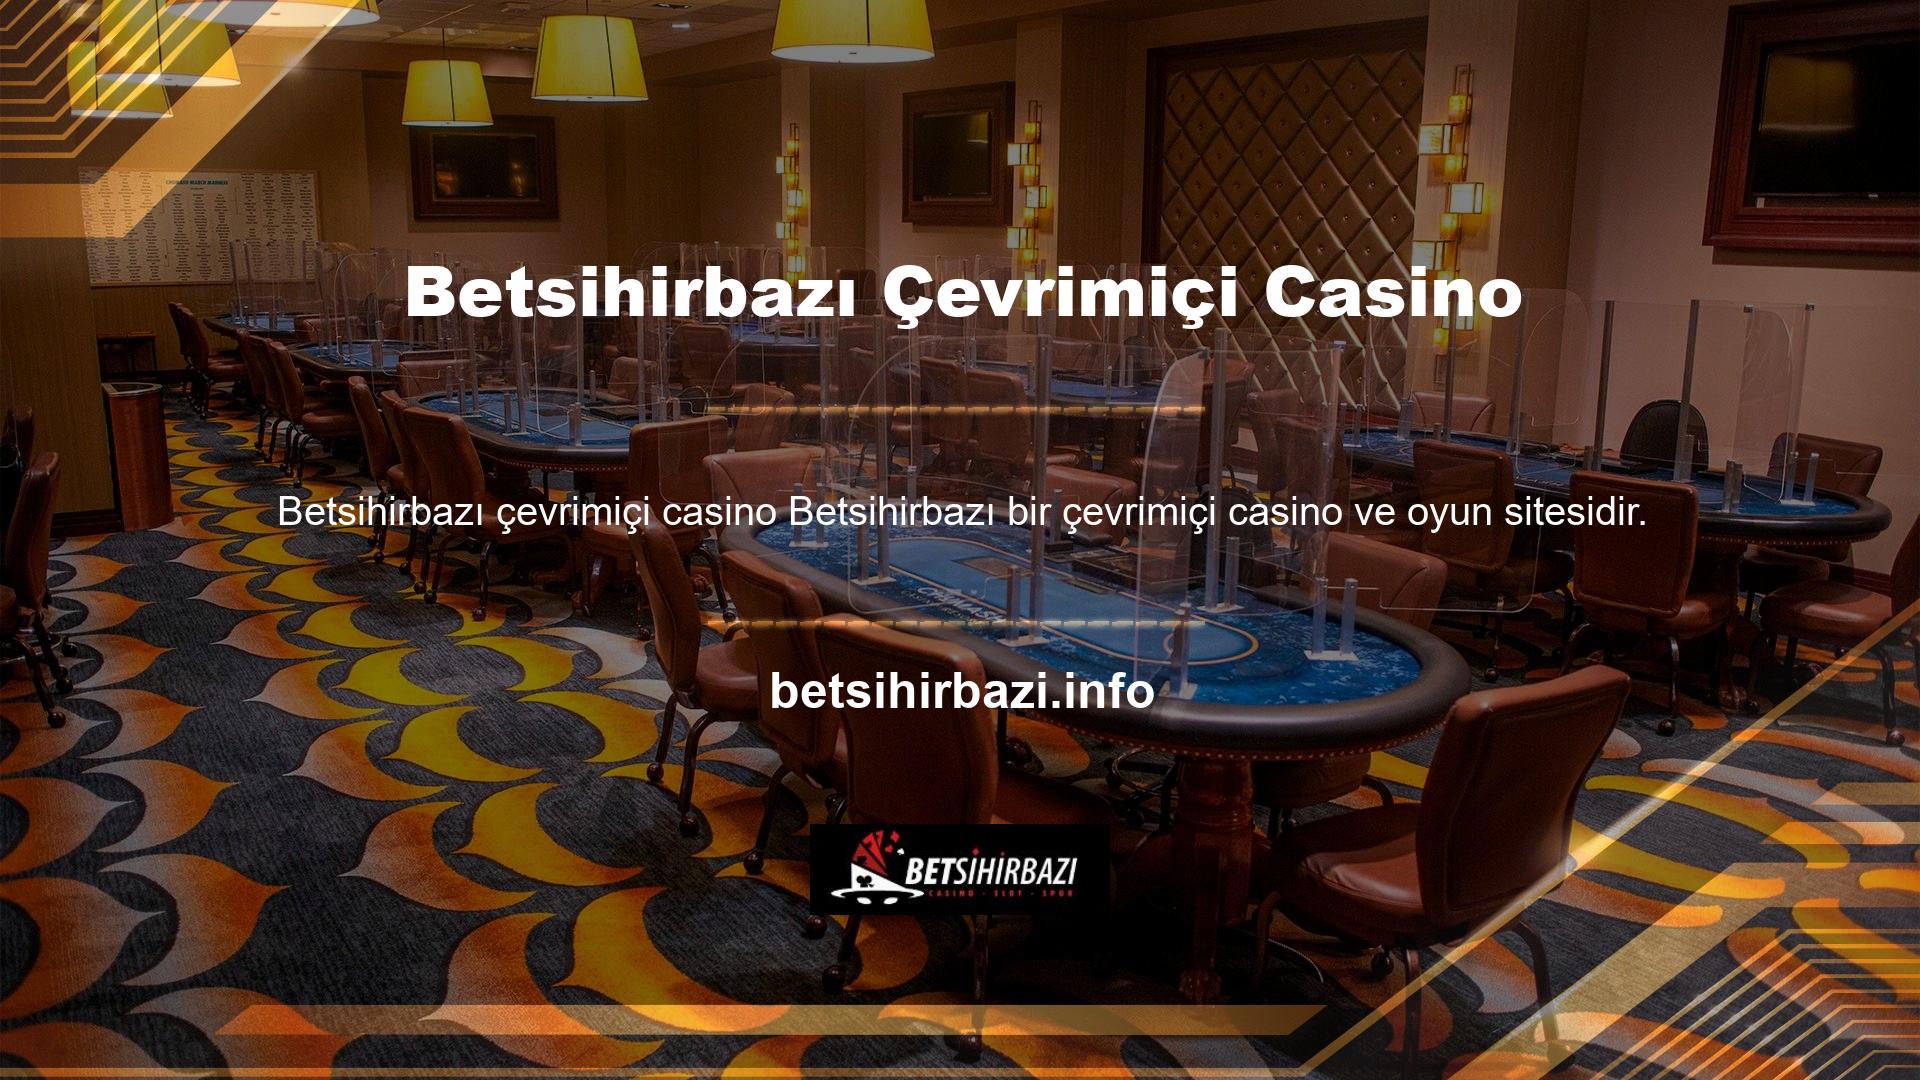 Bu site güvenilir bahisçilerden biridir ve uzun yıllardır kullanıcılarına casino seçenekleri ve bahis fırsatları sunmaktadır ve lisanslıdır